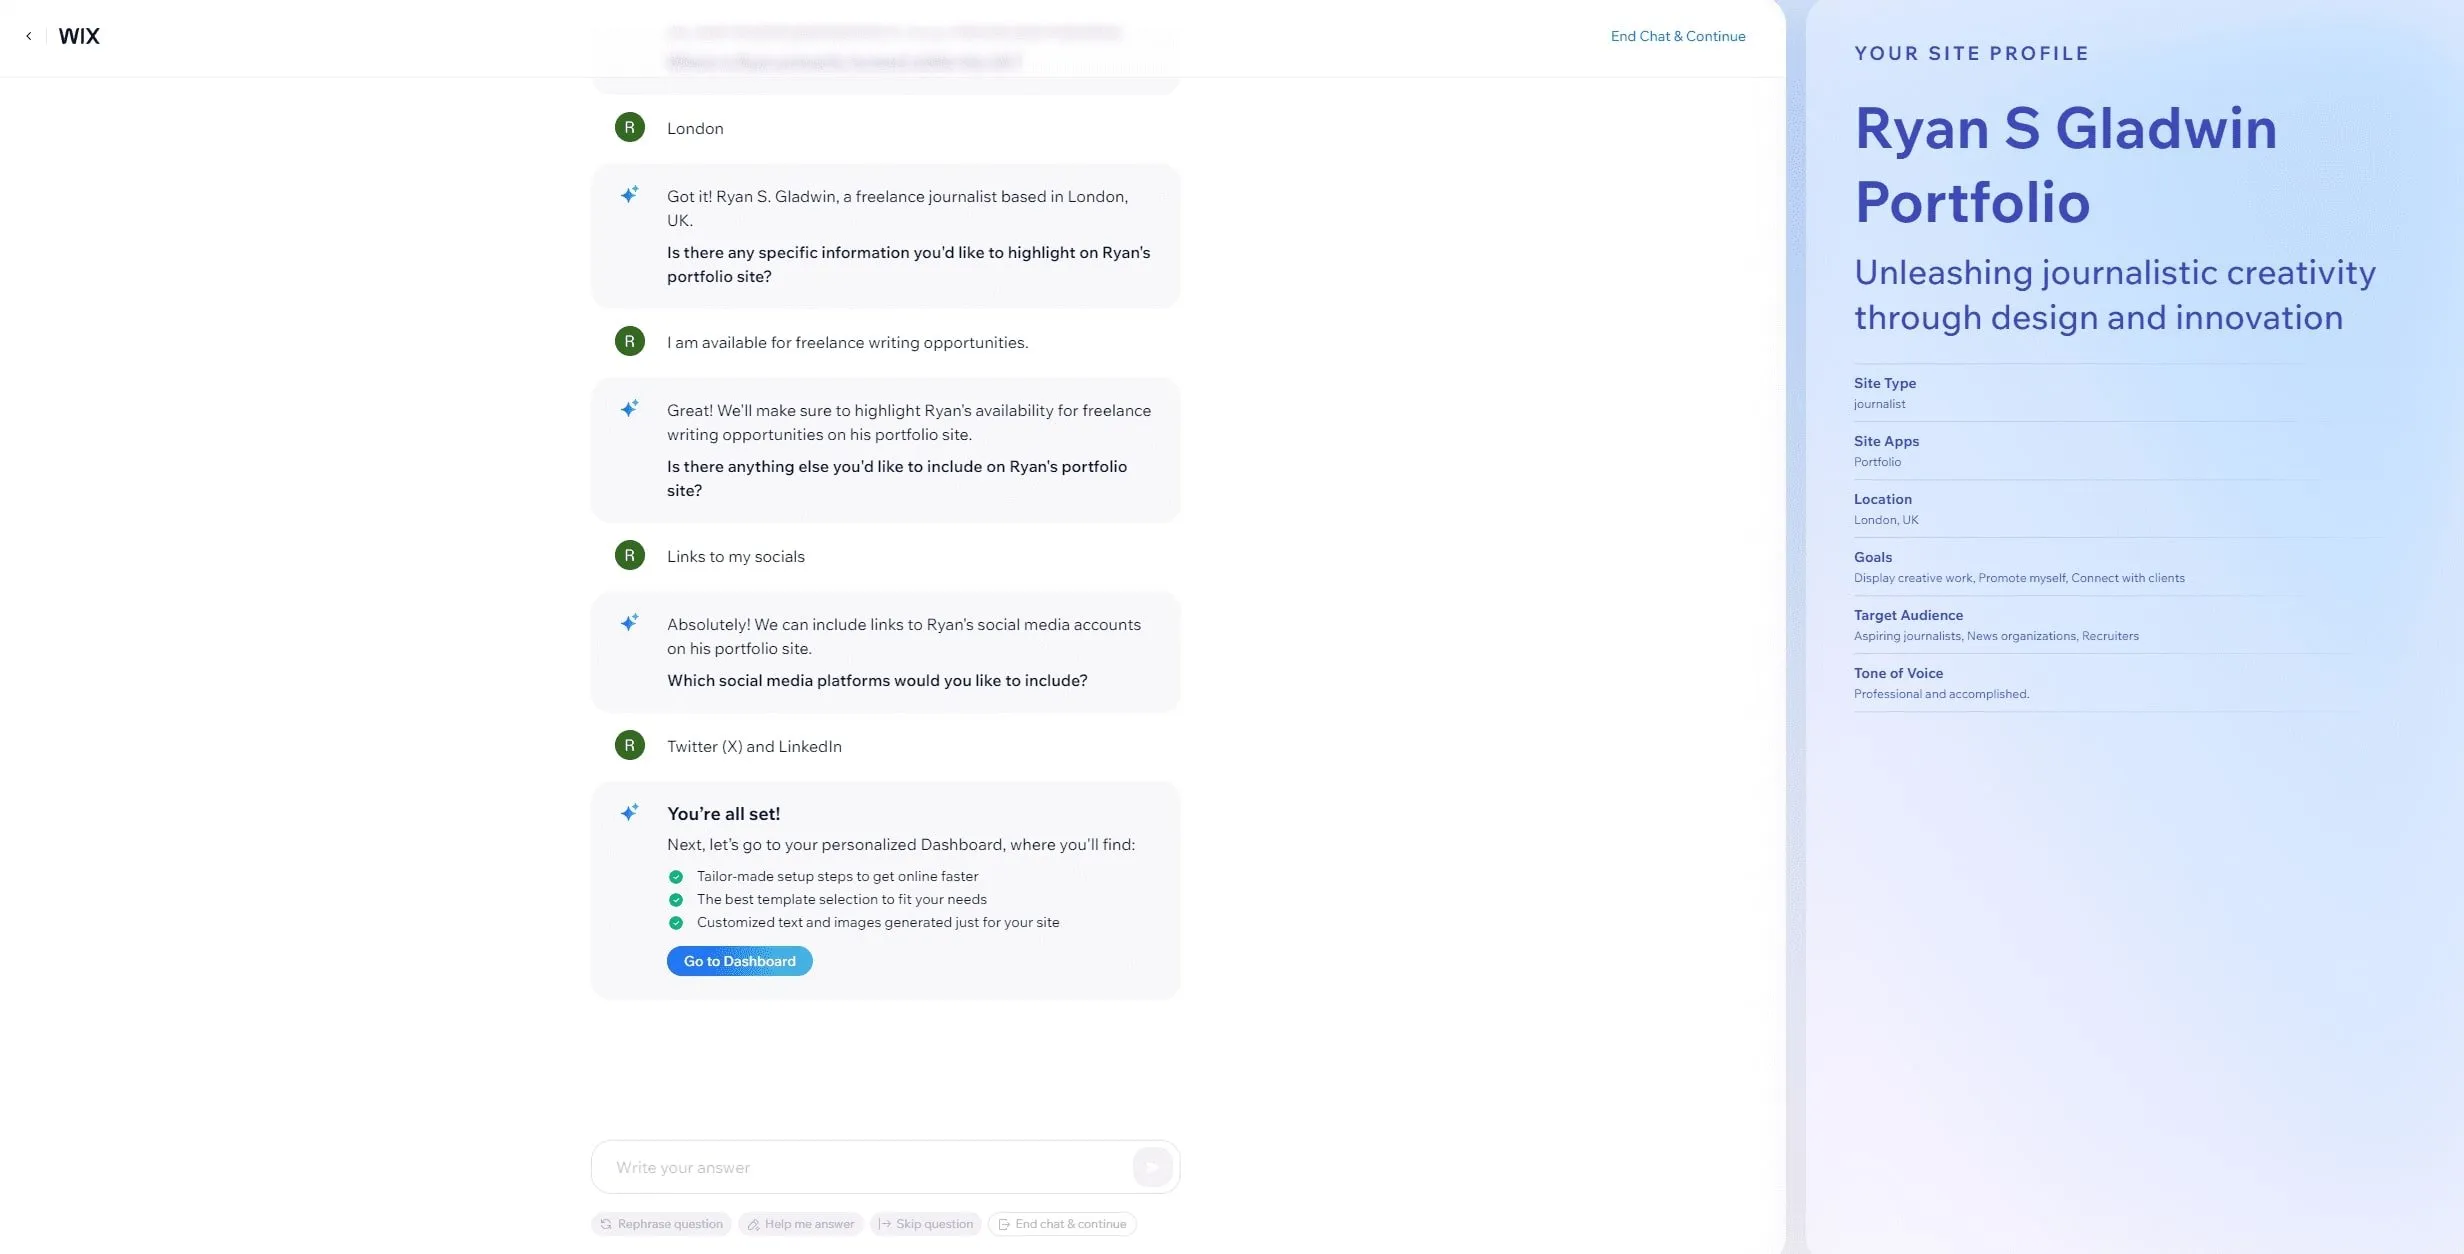 Conversación con el chatbot de Wix. Se preguntó qué información específica Ryan busca resaltar en este sitio, qué quiere incluir y a qué sitios de redes sociales desea vincularse. Entonces el sitio es